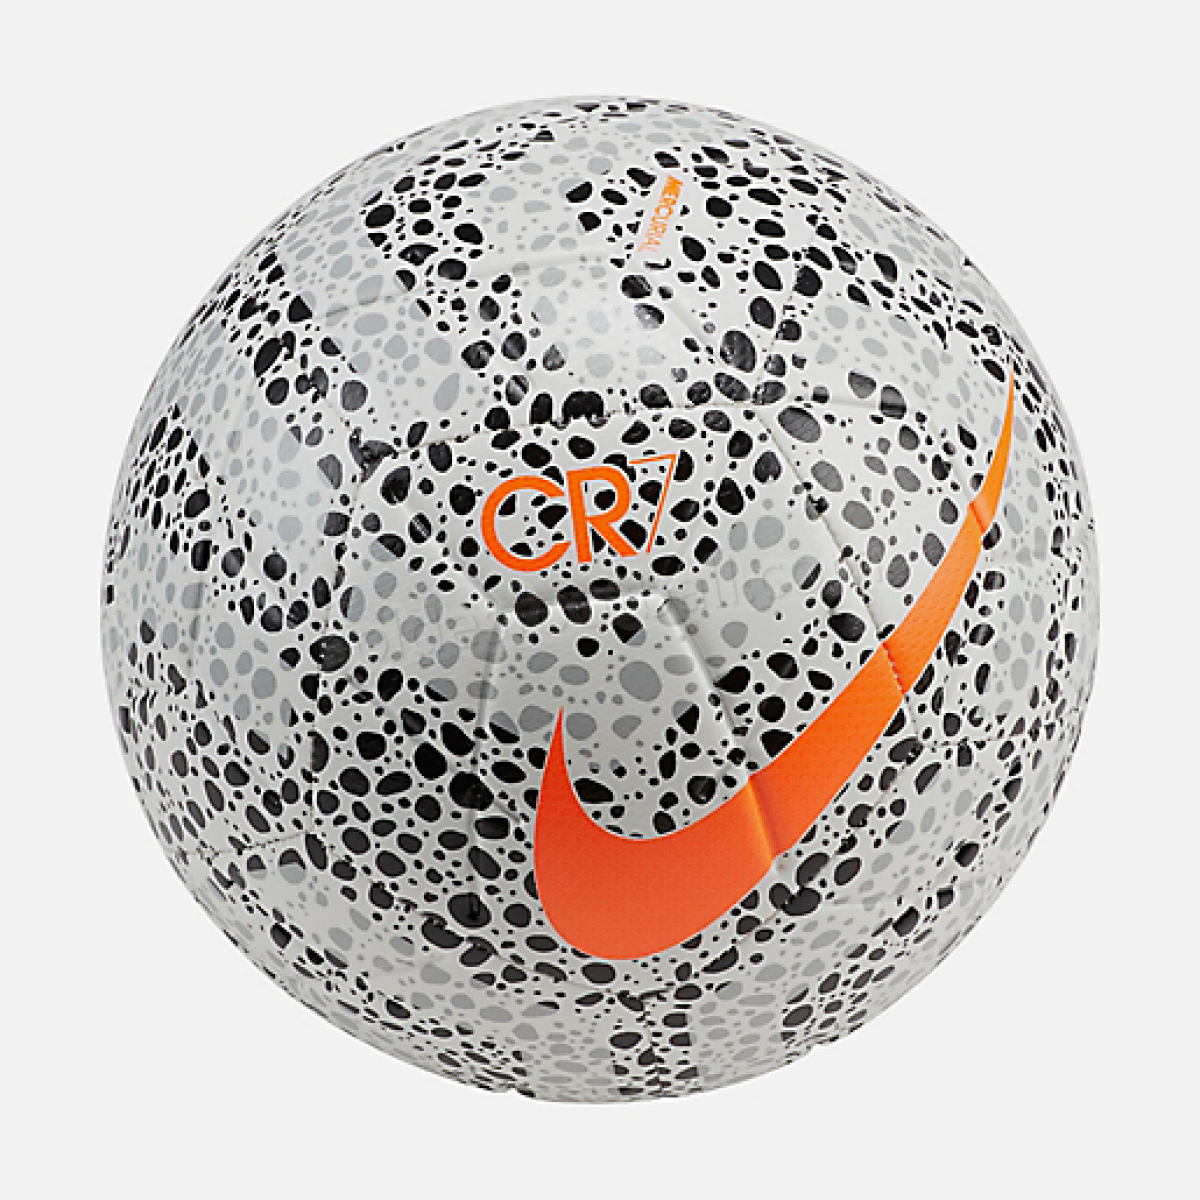 Ballon Strike Cr7 Soccer Ball-NIKE en solde - Ballon Strike Cr7 Soccer Ball-NIKE en solde